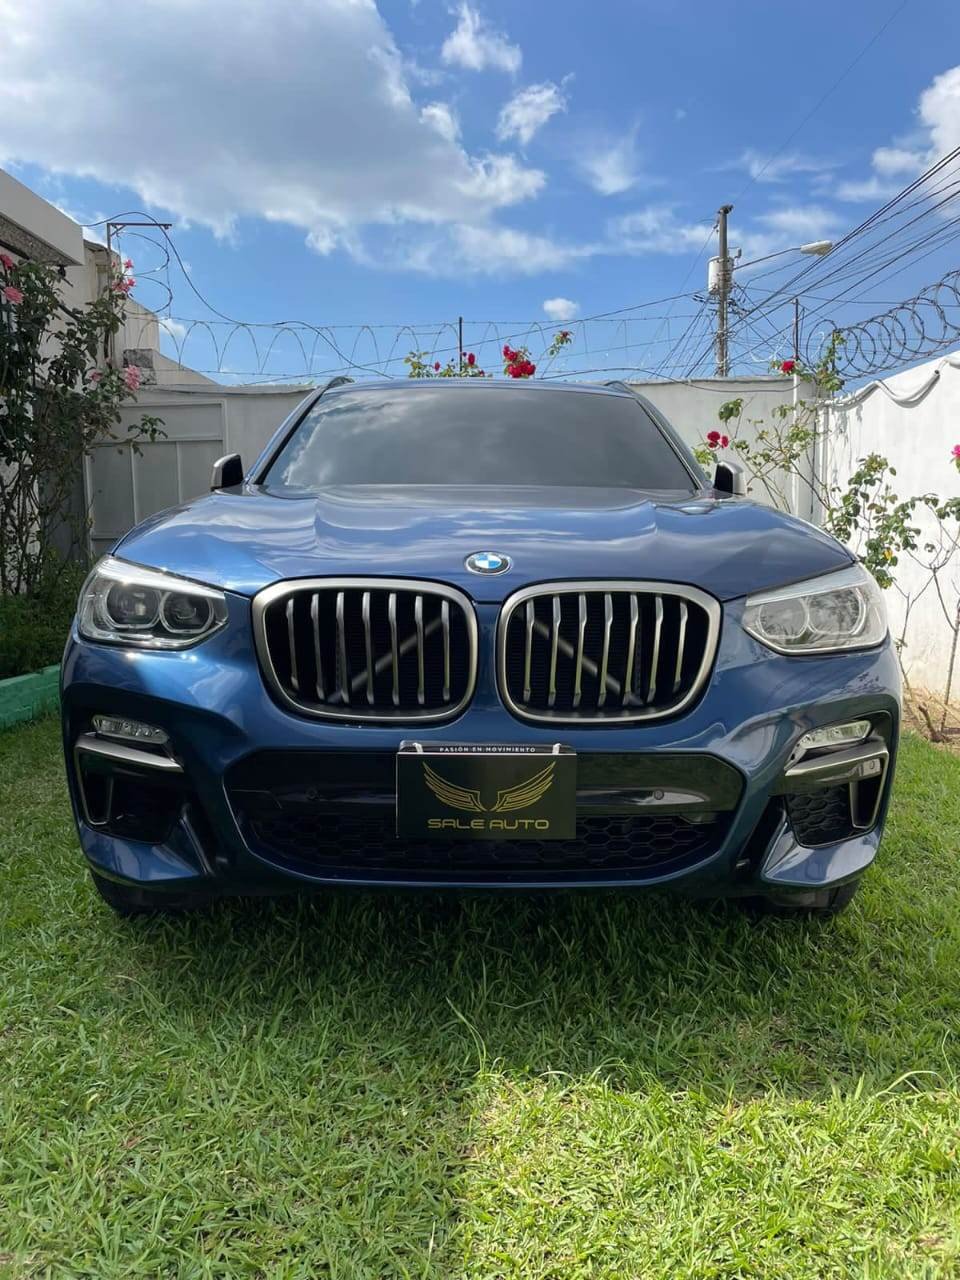 🆂︎︎🅻︎🅴︎ ︎🆄︎🆃︎︎ 🆅︎🅴︎🅽︎🅳︎🅴︎
BMW X3 M40i 2018 de Agencia

Dólares:
Precio Financiad